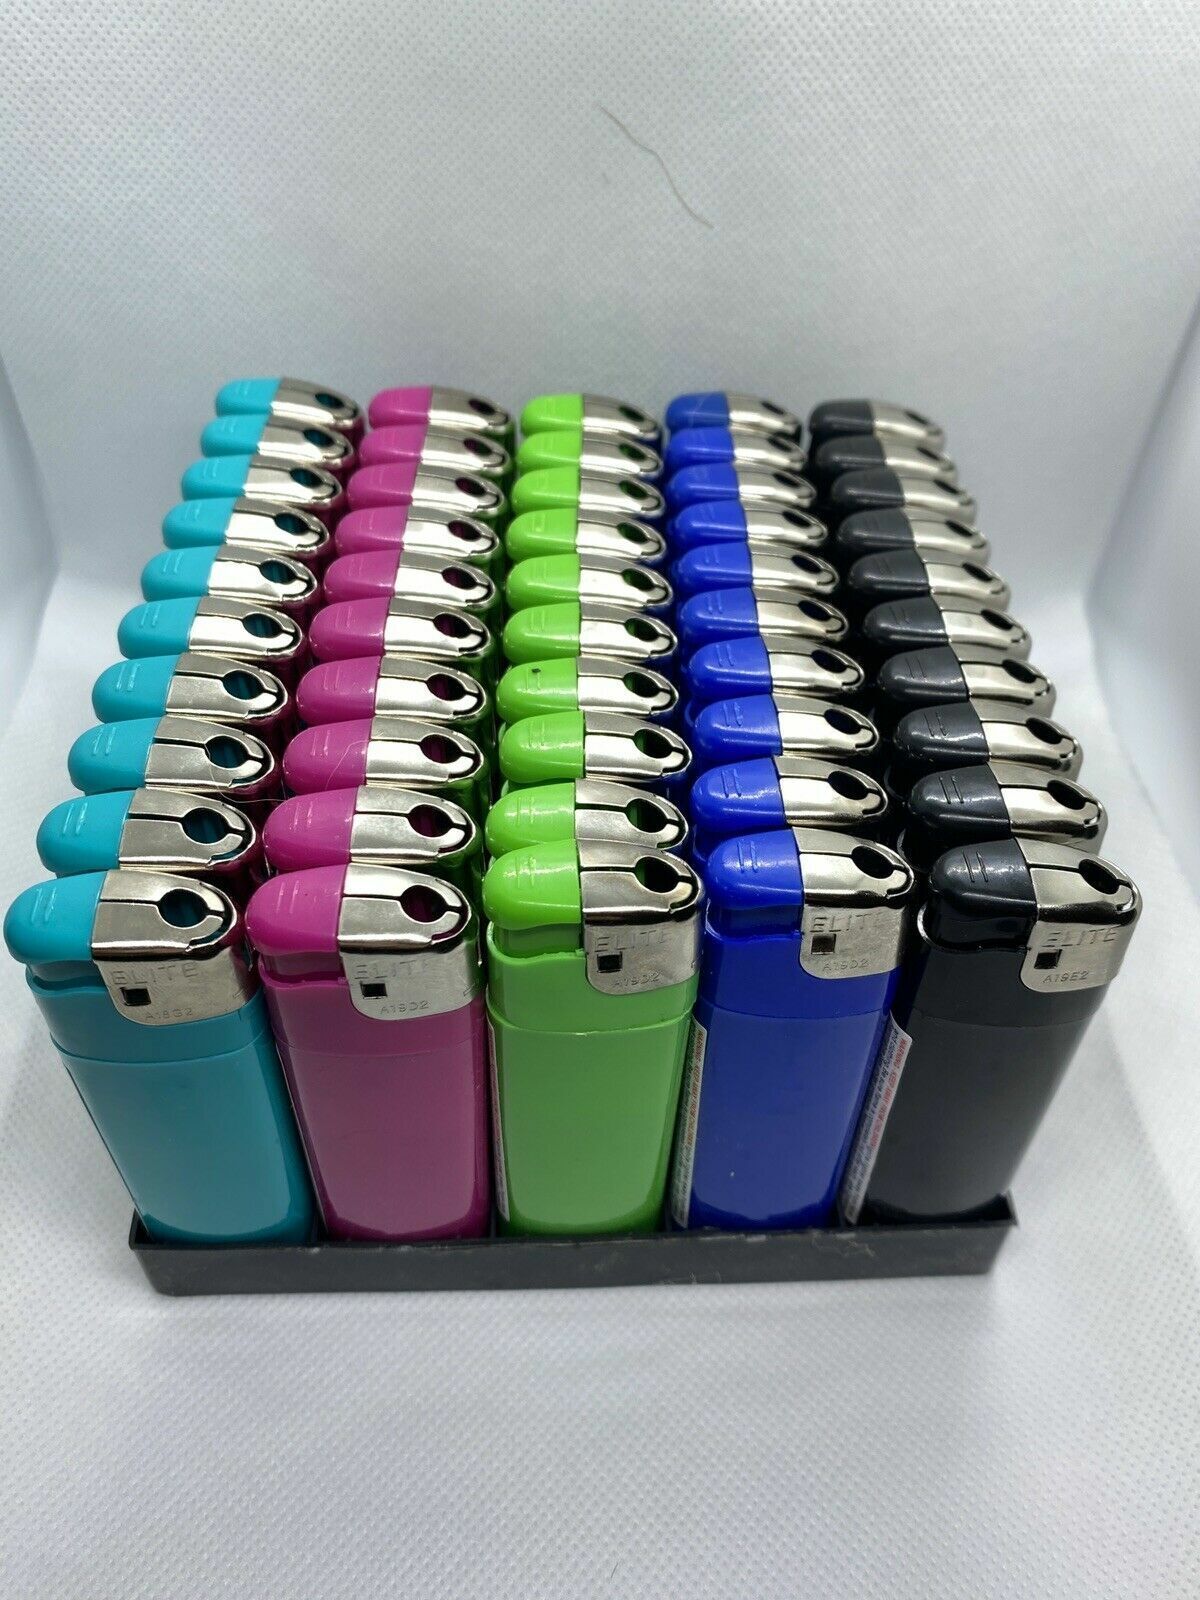 Disposable lighter - 100 Bulk Wholesale Lighters - Assorted Colors Wholesale Lot